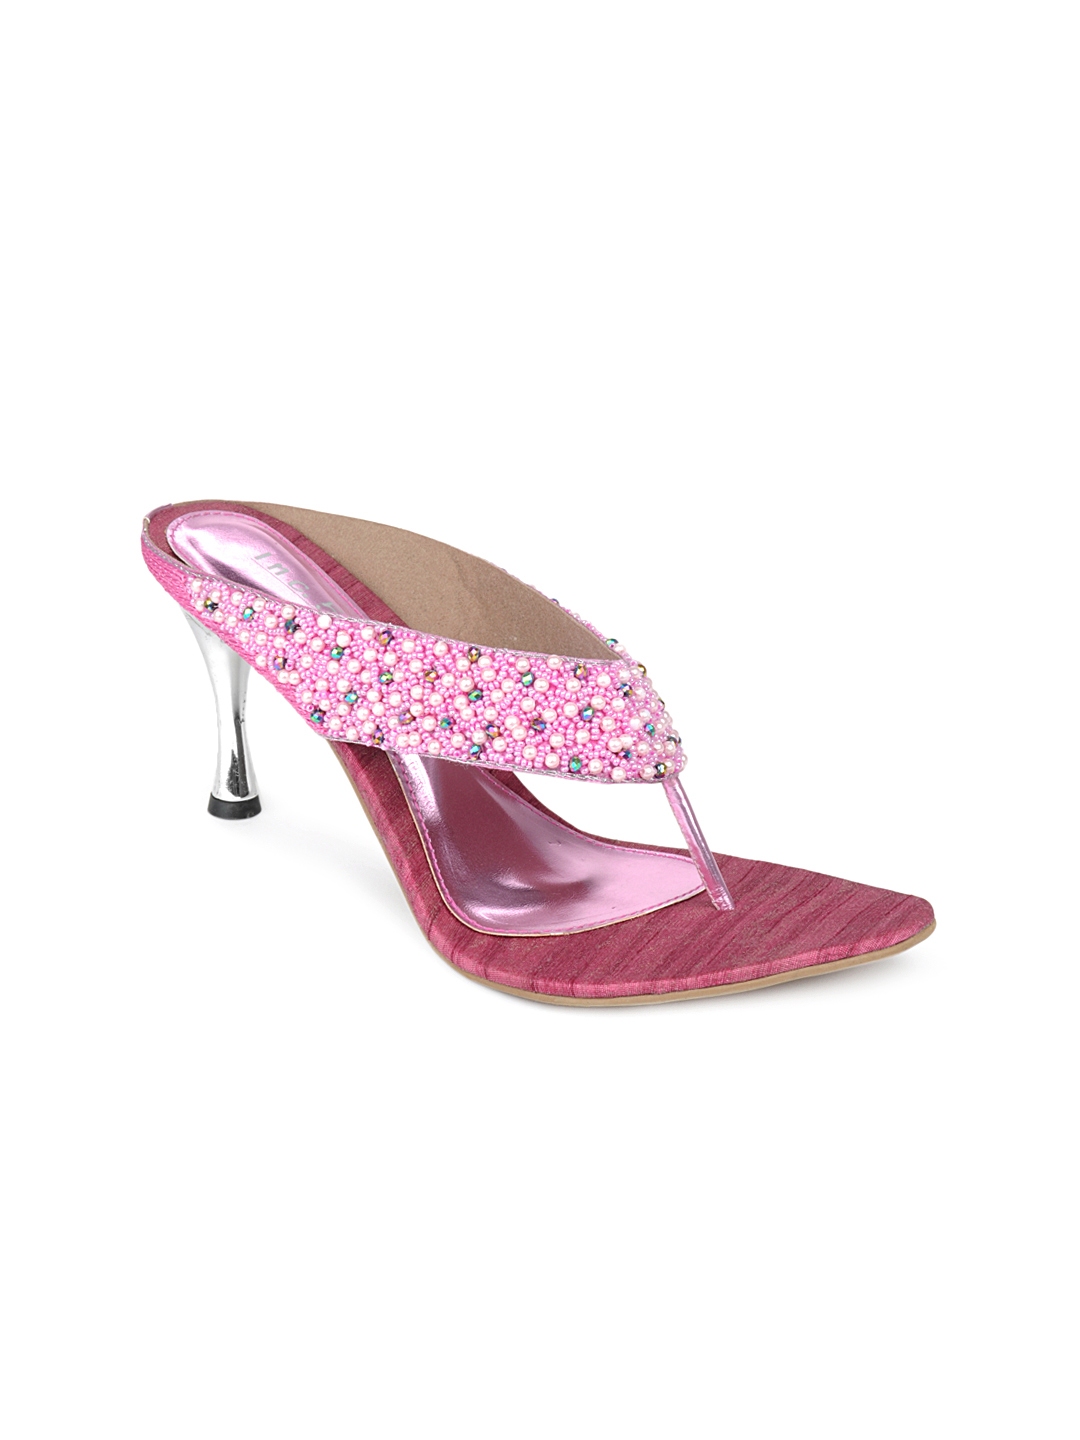 Buy Inc 5 Women Pink Heels - Heels for 